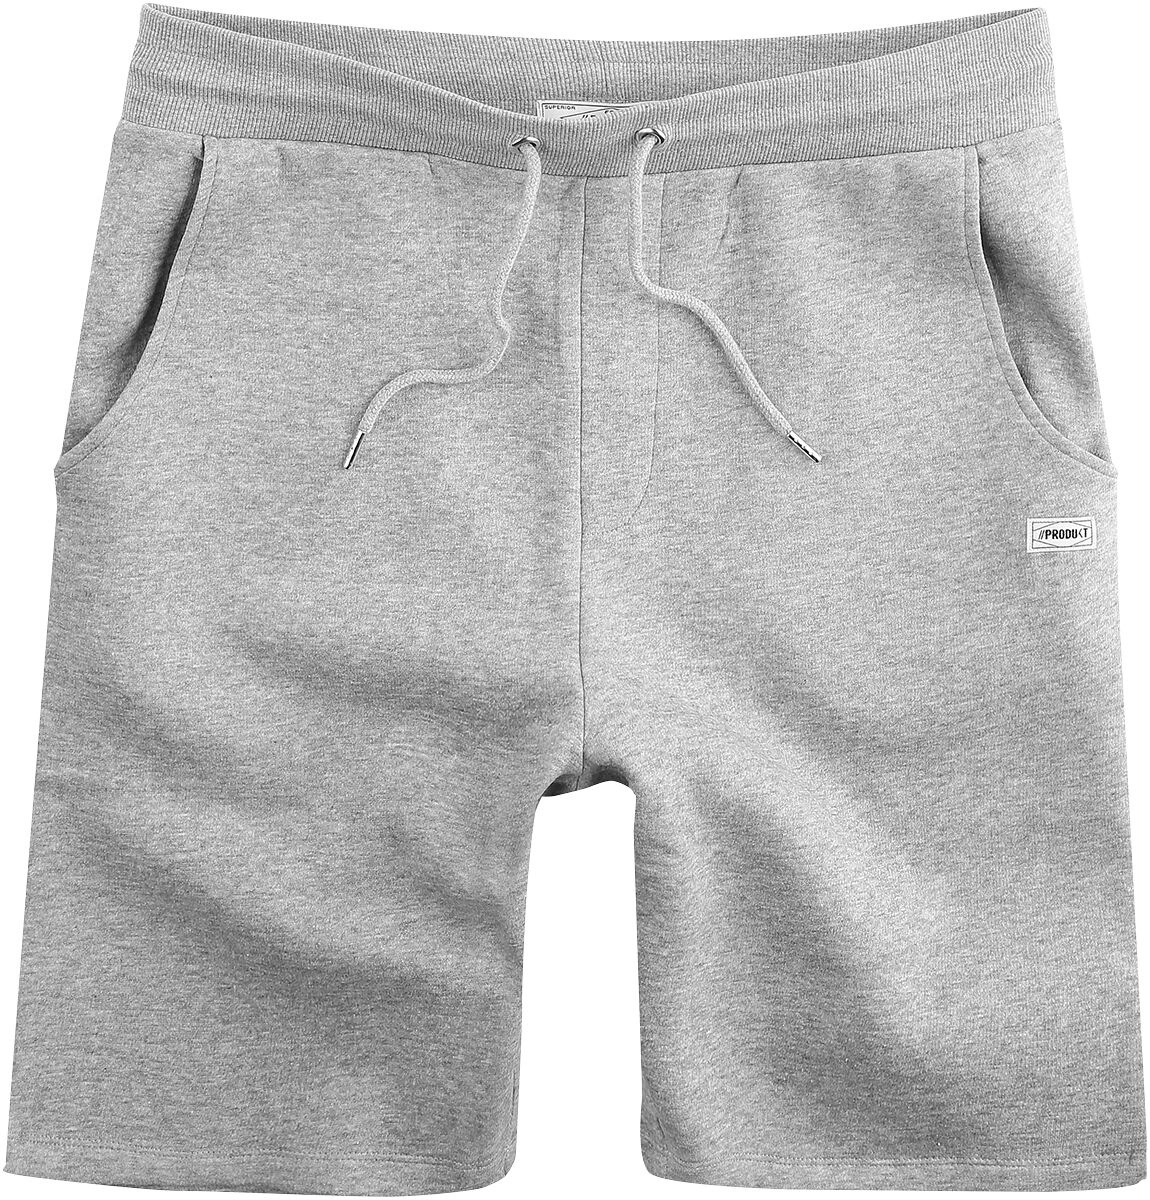 Produkt Short - Basic Sweat Shorts - S bis XXL - für Männer - Größe XL - hellgrau meliert von Produkt